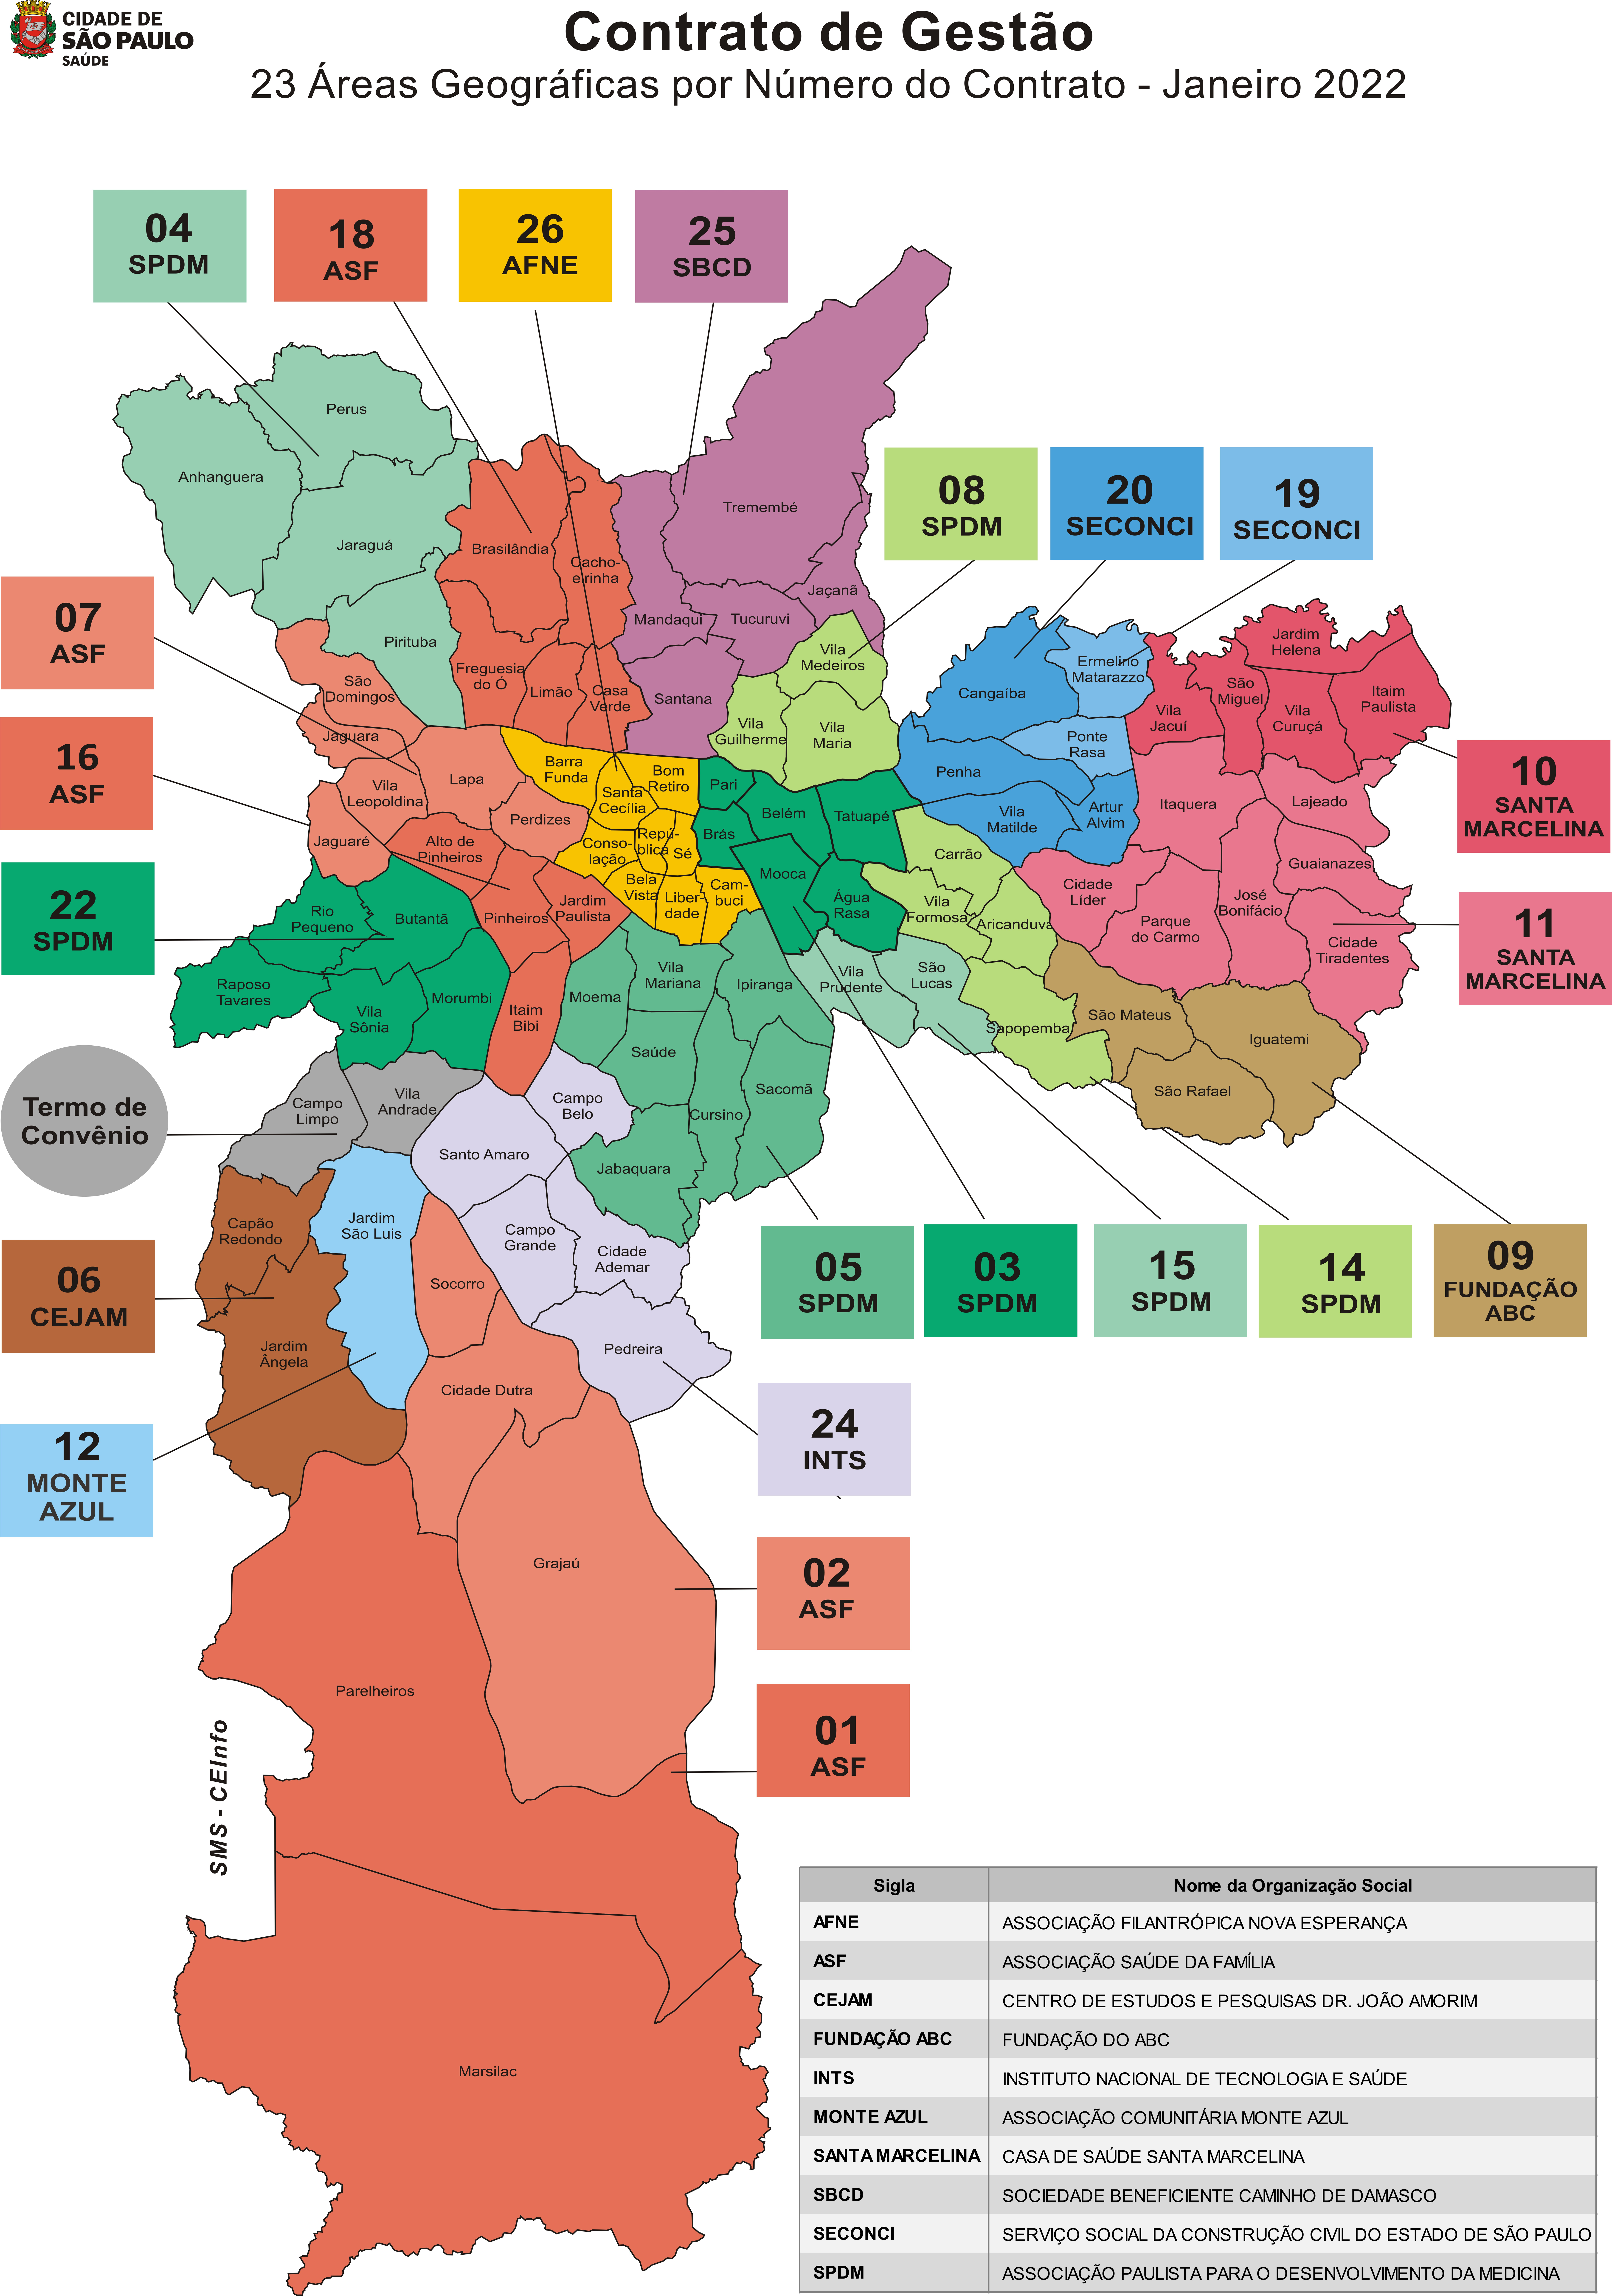 Mapa do município de São Paulo colorido, com caixas de diálogo que saem das regiões com números de 1 a 26 com os nomes das Organizações Sociais de Saúde (OSS) responsáveis pelos territórios.